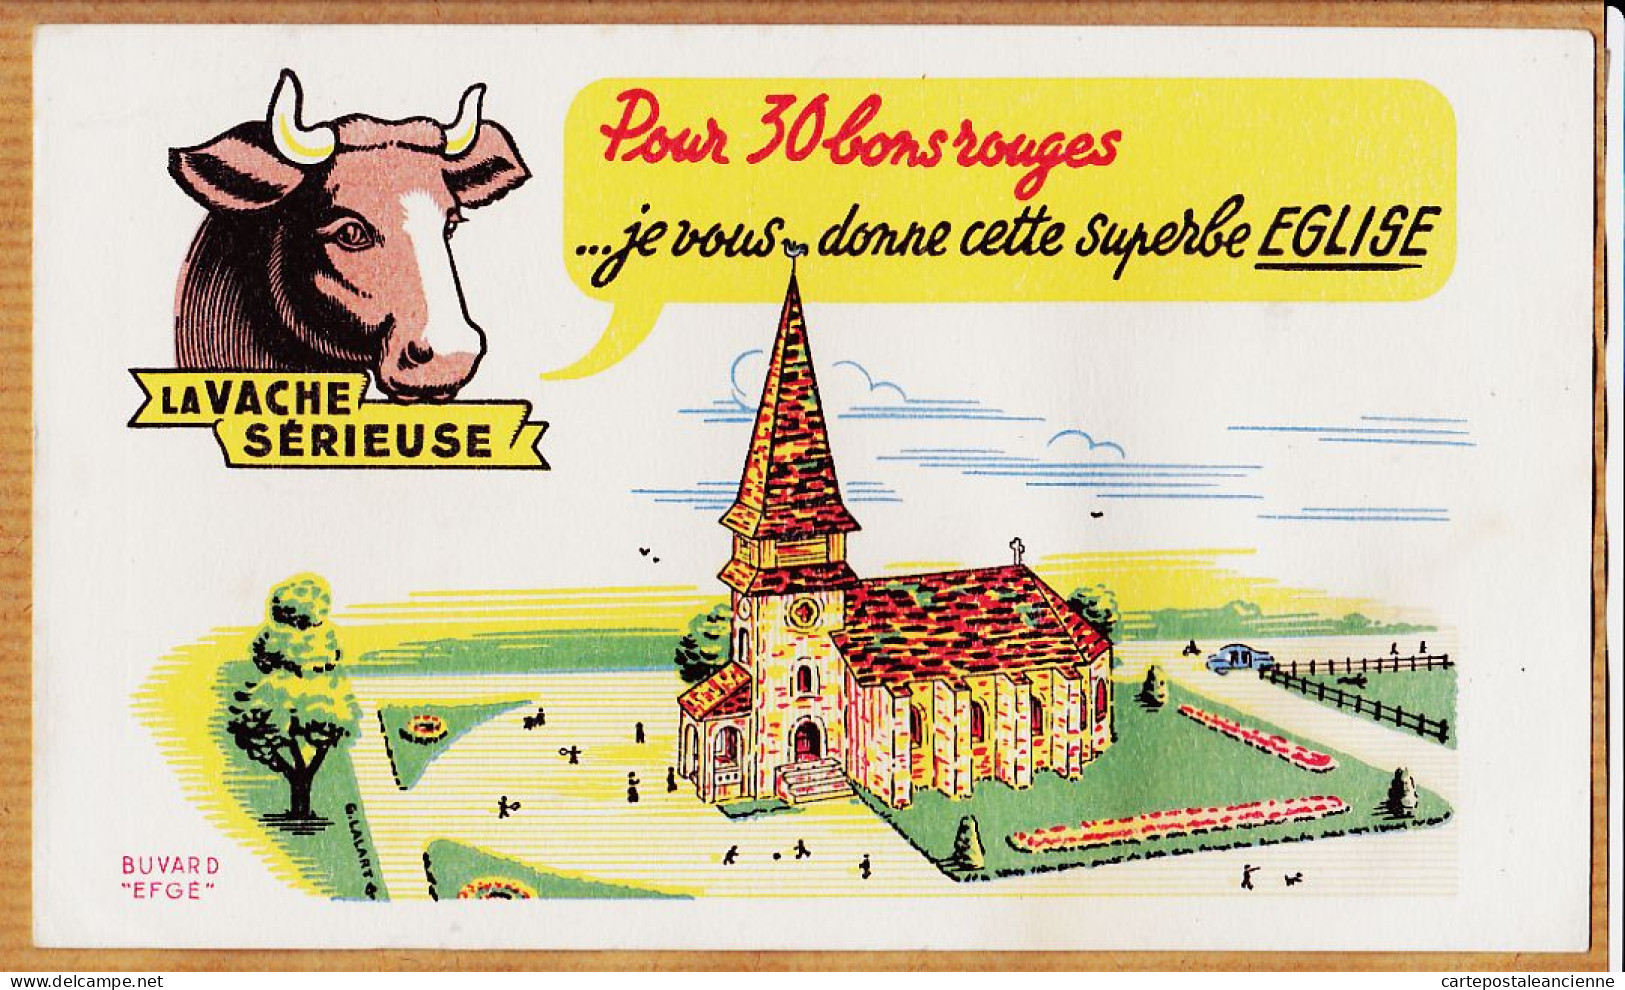 14851 / ⭐ LA VACHE SERIEUSE Crème Double Crème De Gruyère Pour 30 Bons Cette Superbe Eglise / Buvard EFGE 1950s Cppub - Alimentaire